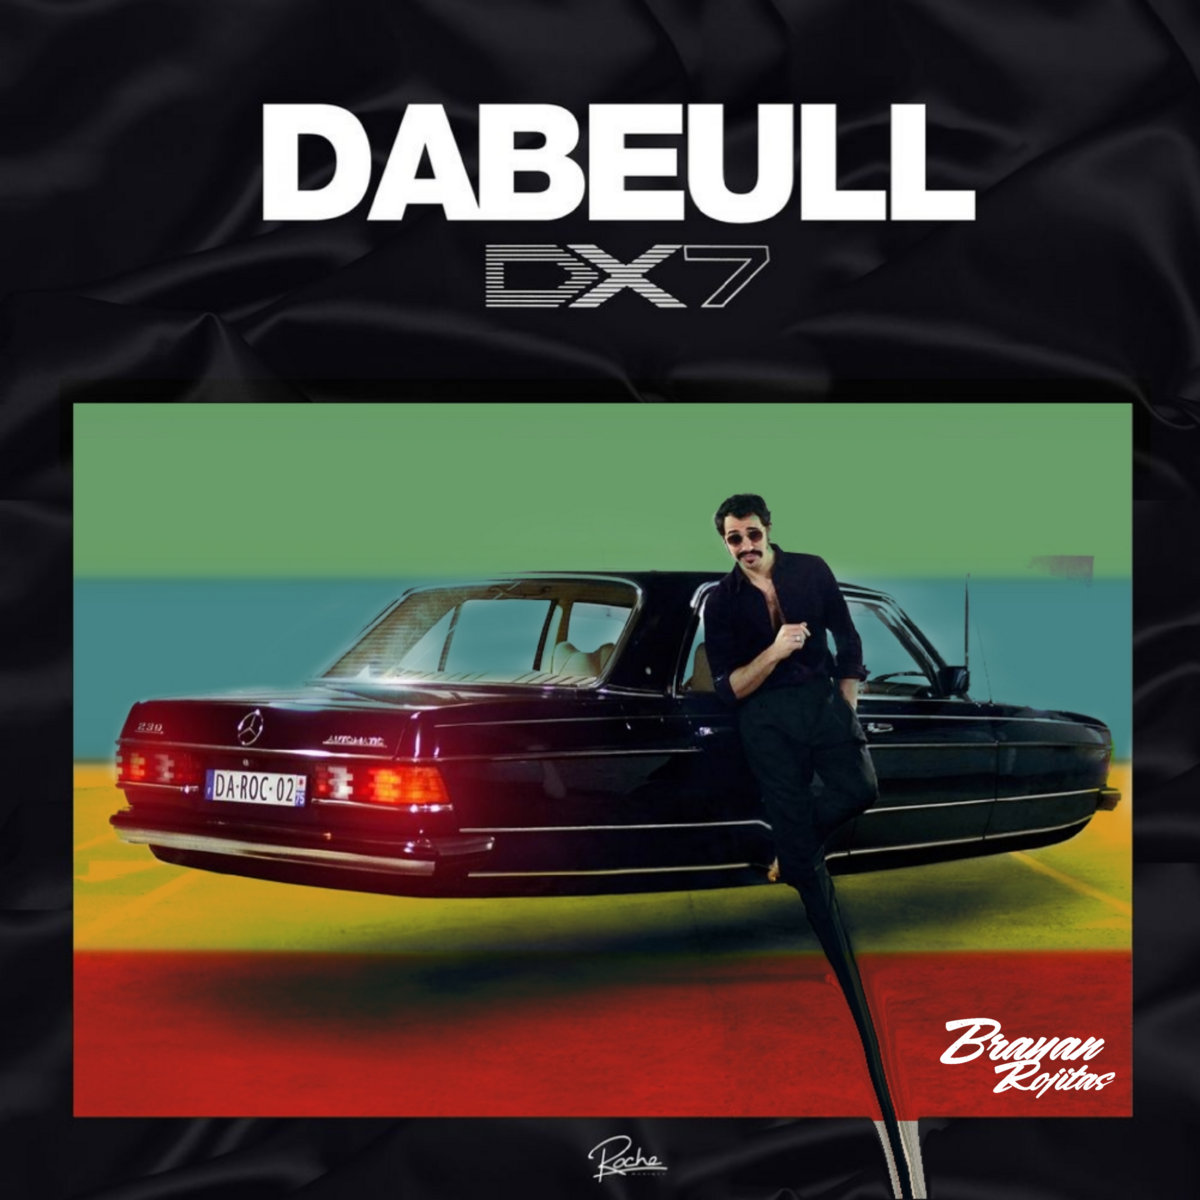 DX7 - Dabeull [Brayan Rojitas Remix]